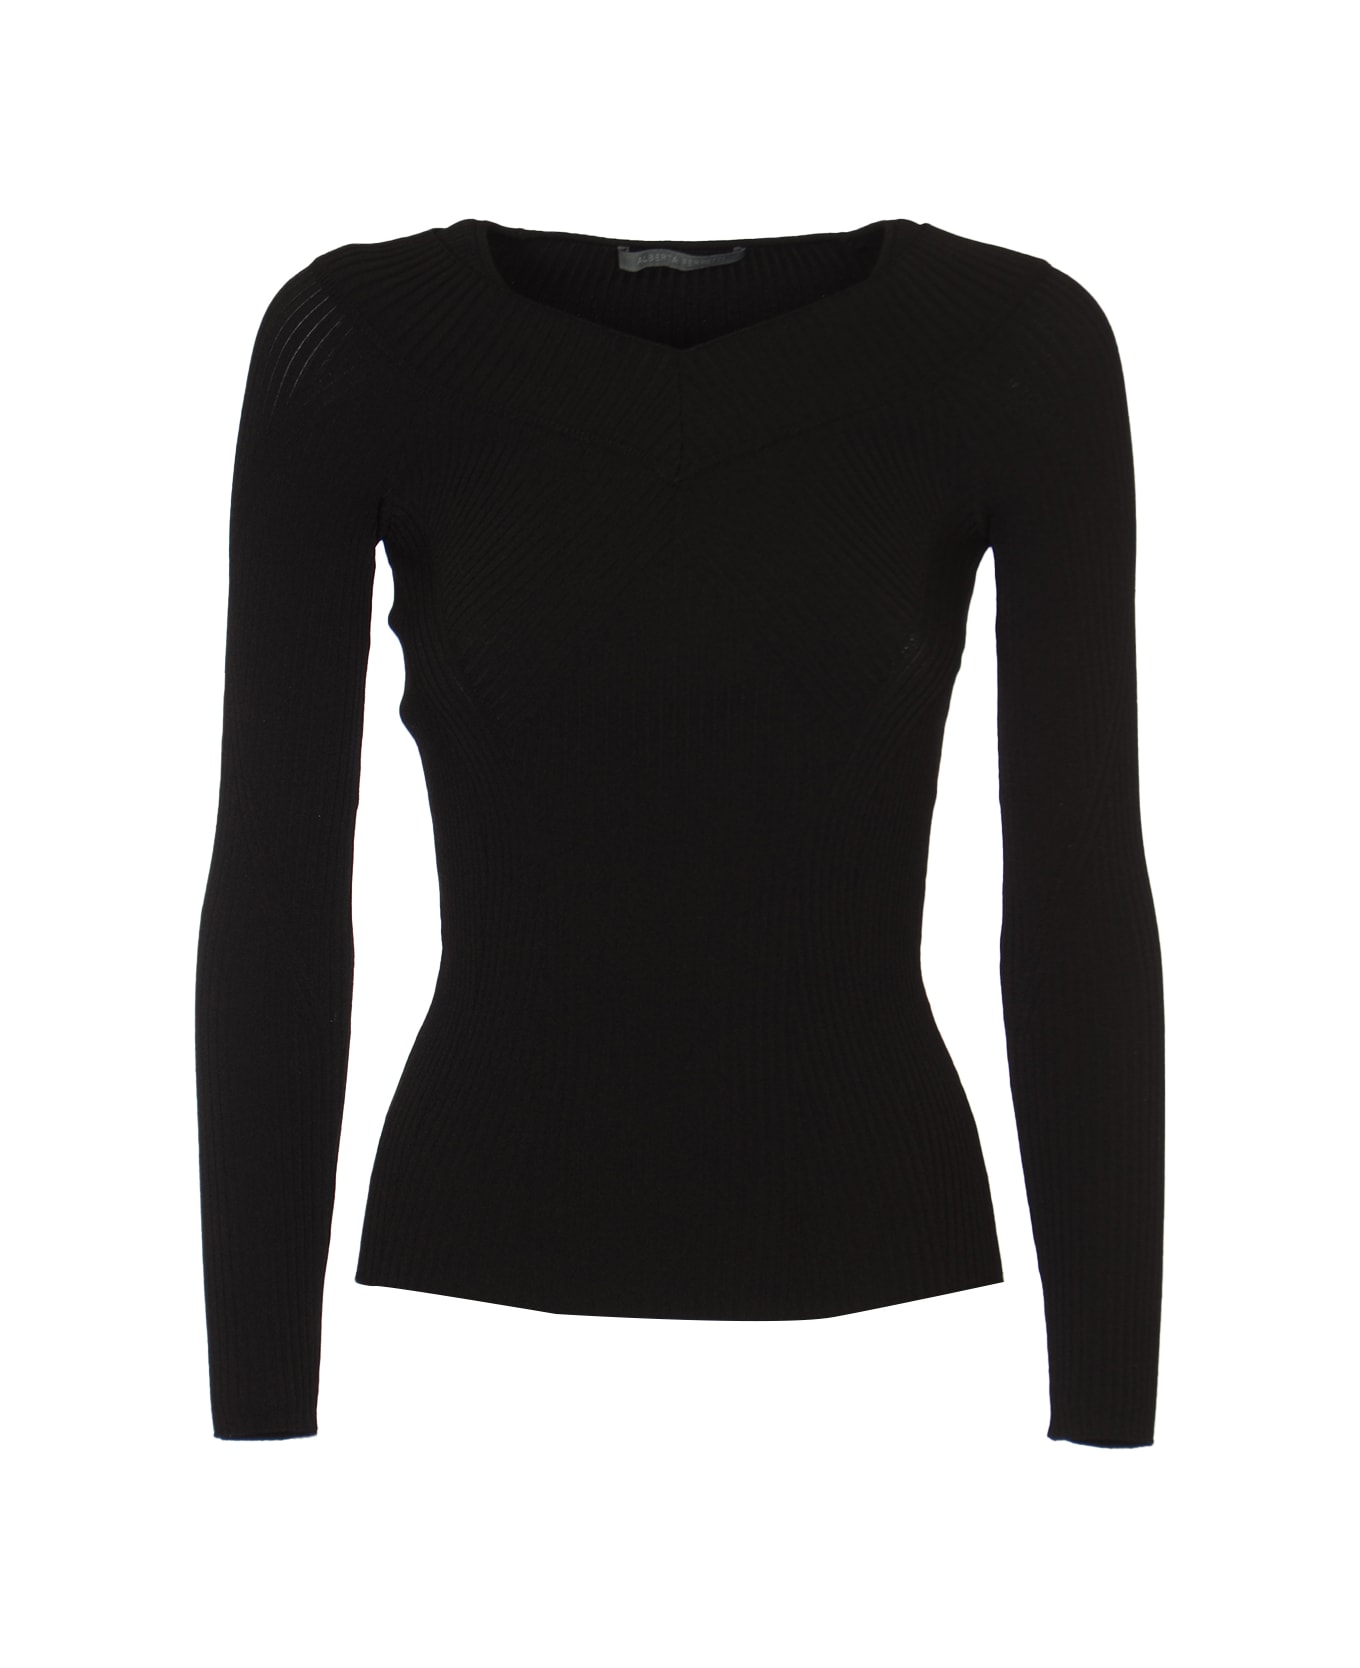 Alberta Ferretti Long-sleeved Sweater - Black ニットウェア